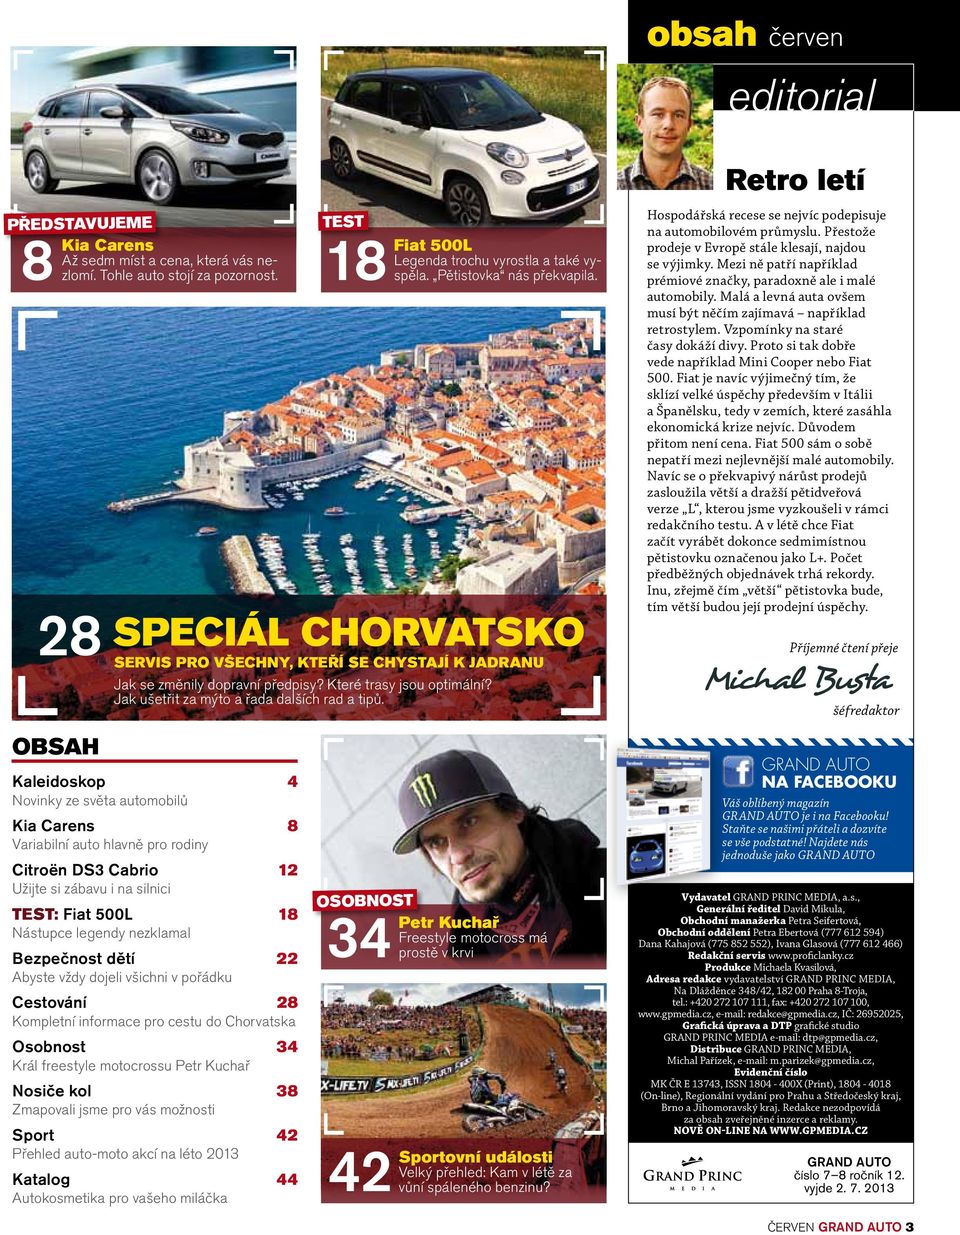 Kaleidoskop 4 Novinky ze světa automobilů Kia Carens 8 Variabilní auto hlavně pro rodiny Citroën DS3 Cabrio 12 Užijte si zábavu i na silnici TEST: Fiat 500L 18 Nástupce legendy nezklamal Bezpečnost